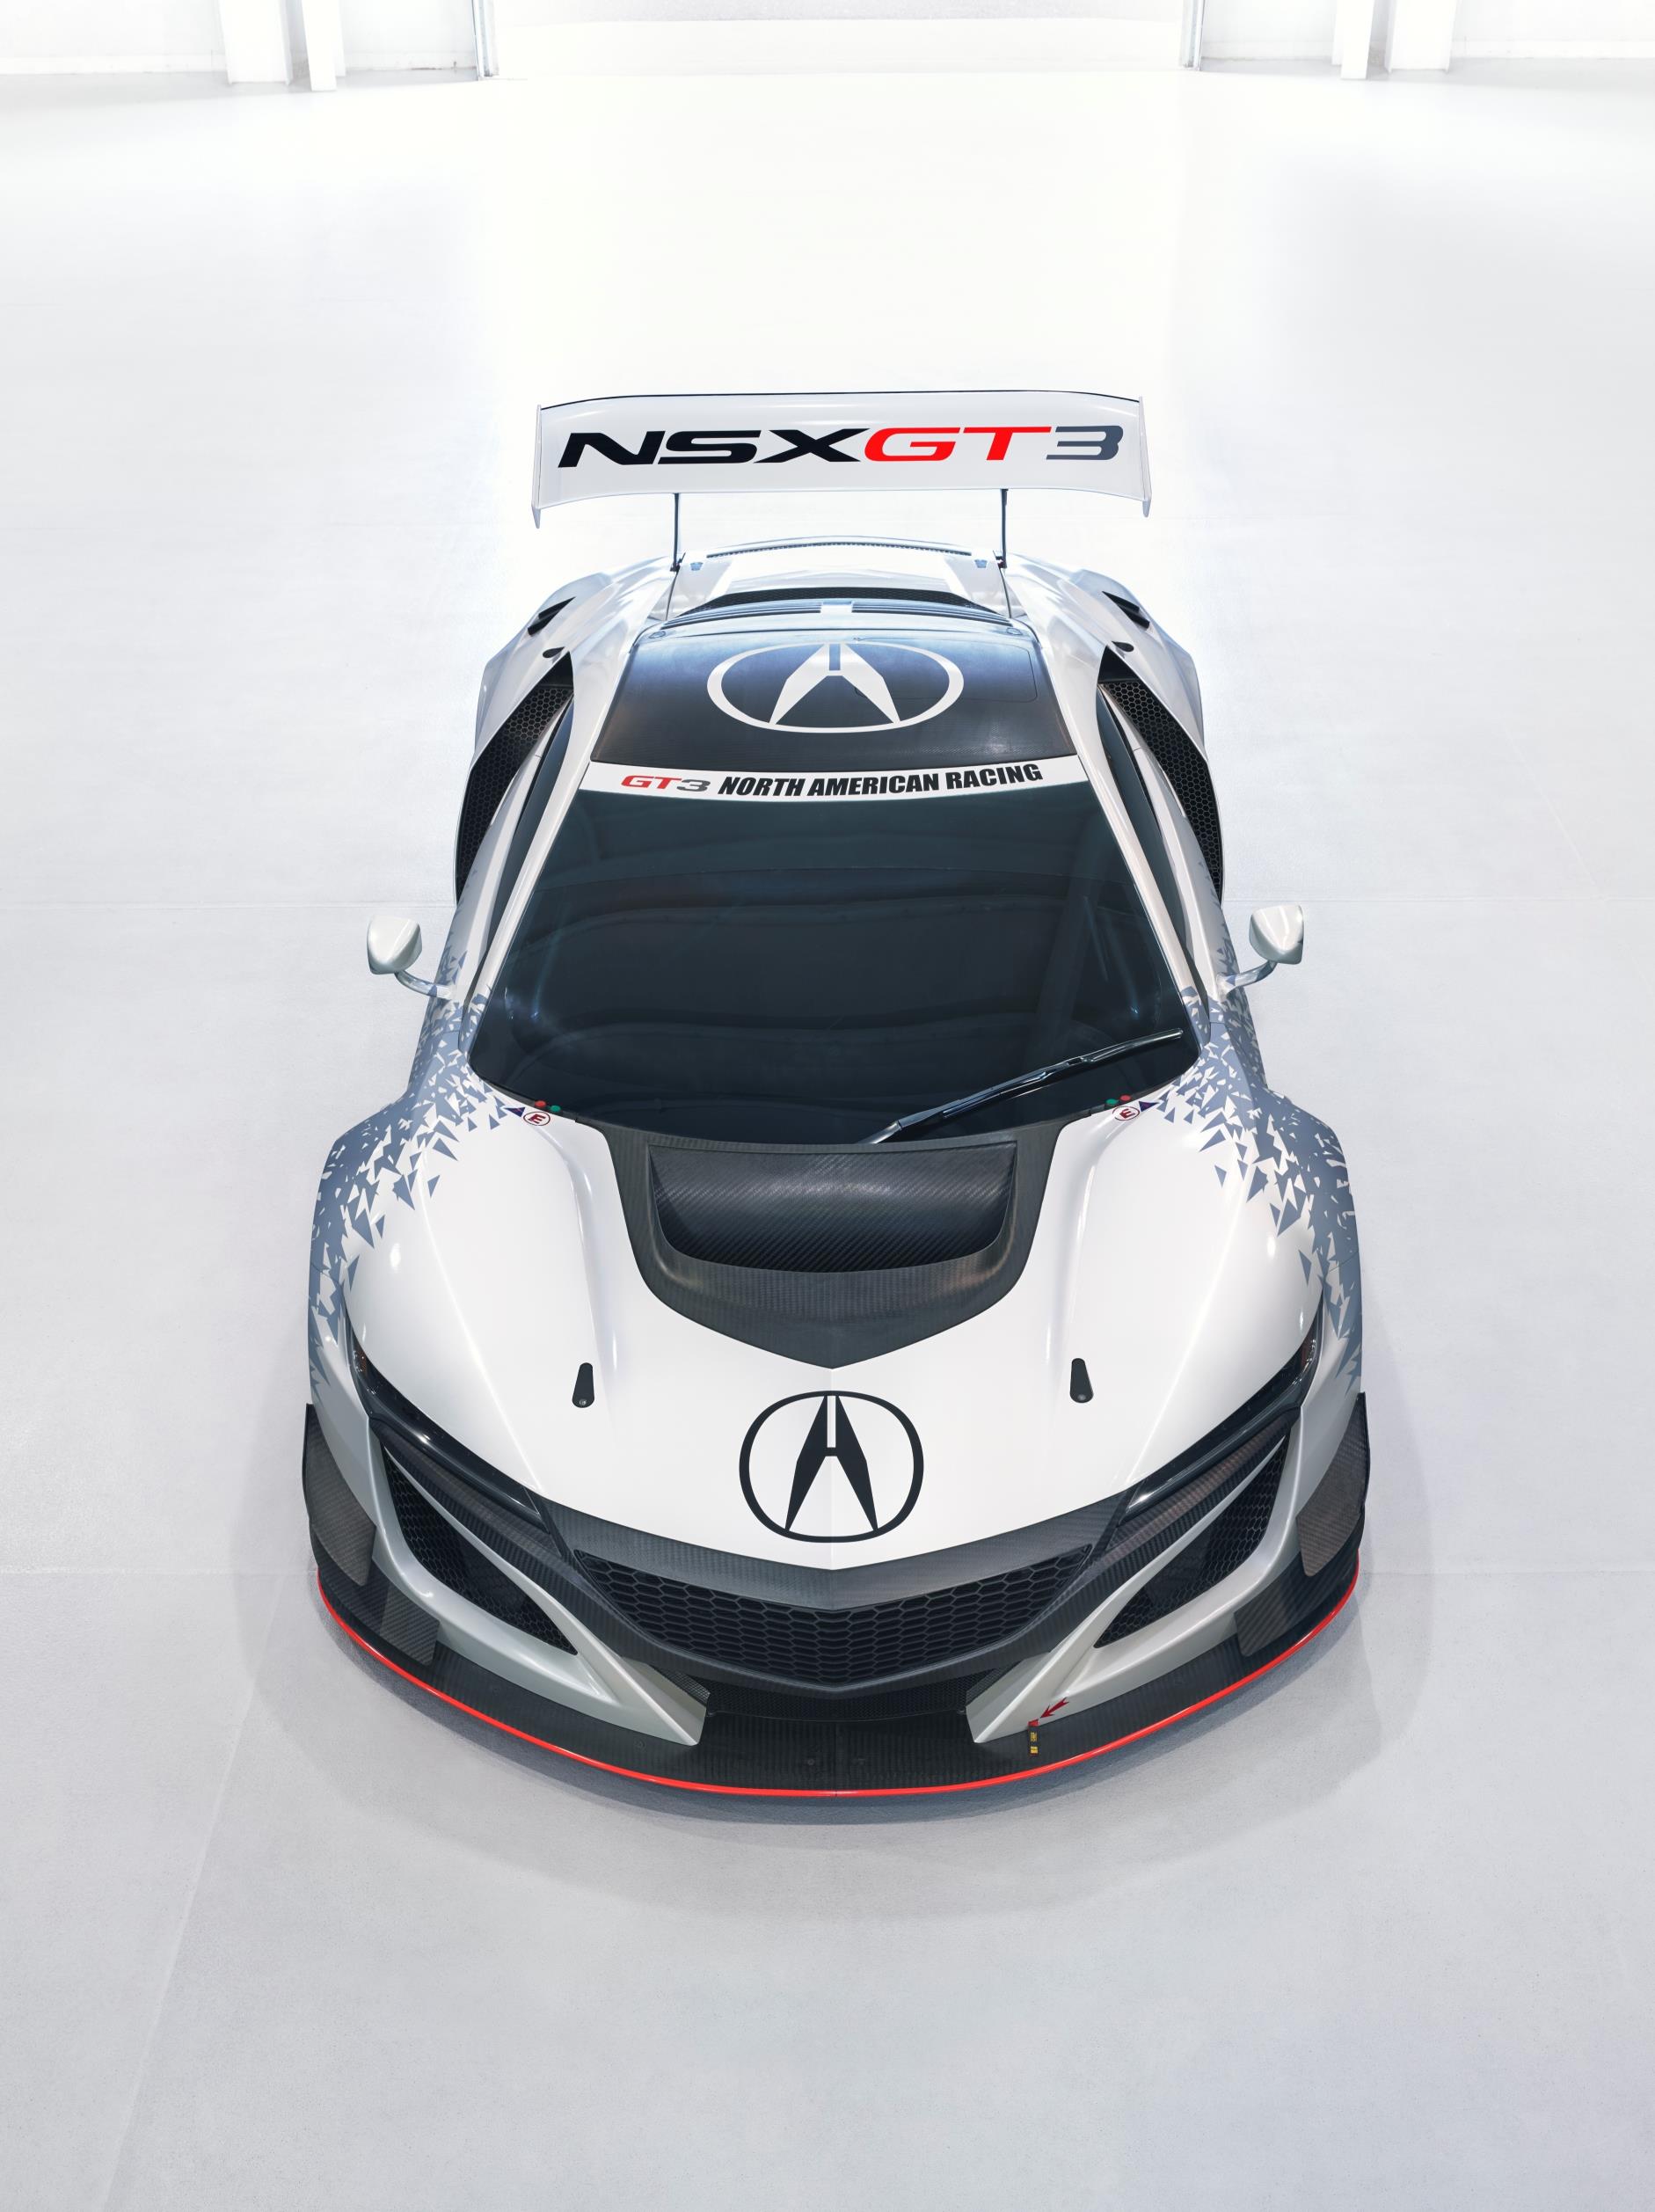 Acura NSX GT3 Racer